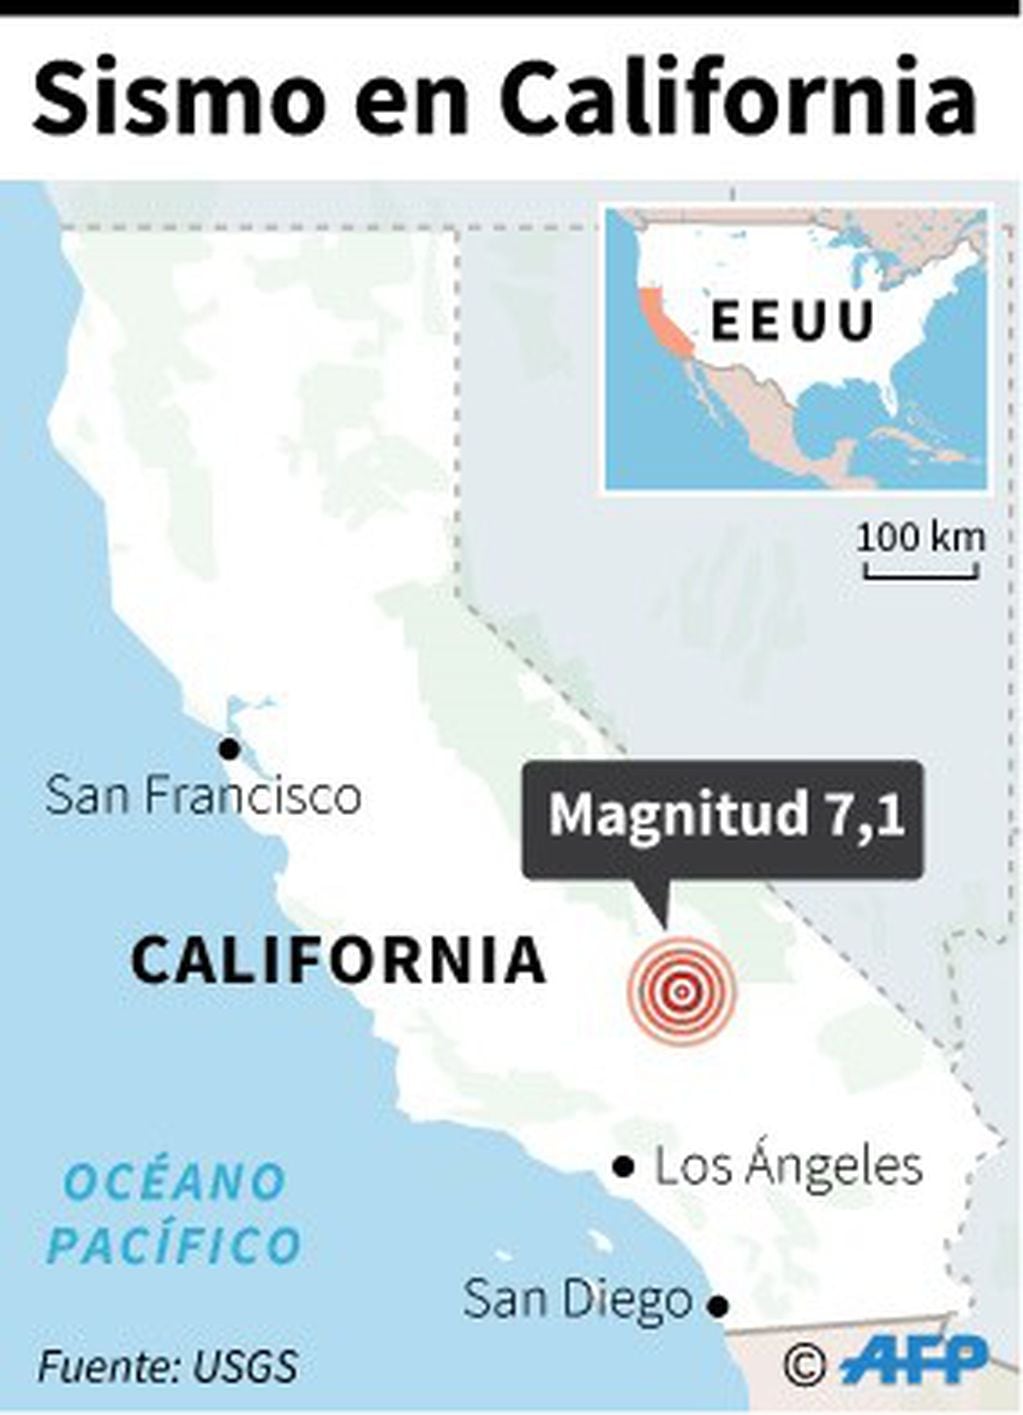 Mapa del estado de California localizando el sismo de magnitud 7,1, ocurrido este viernes. (AFP)